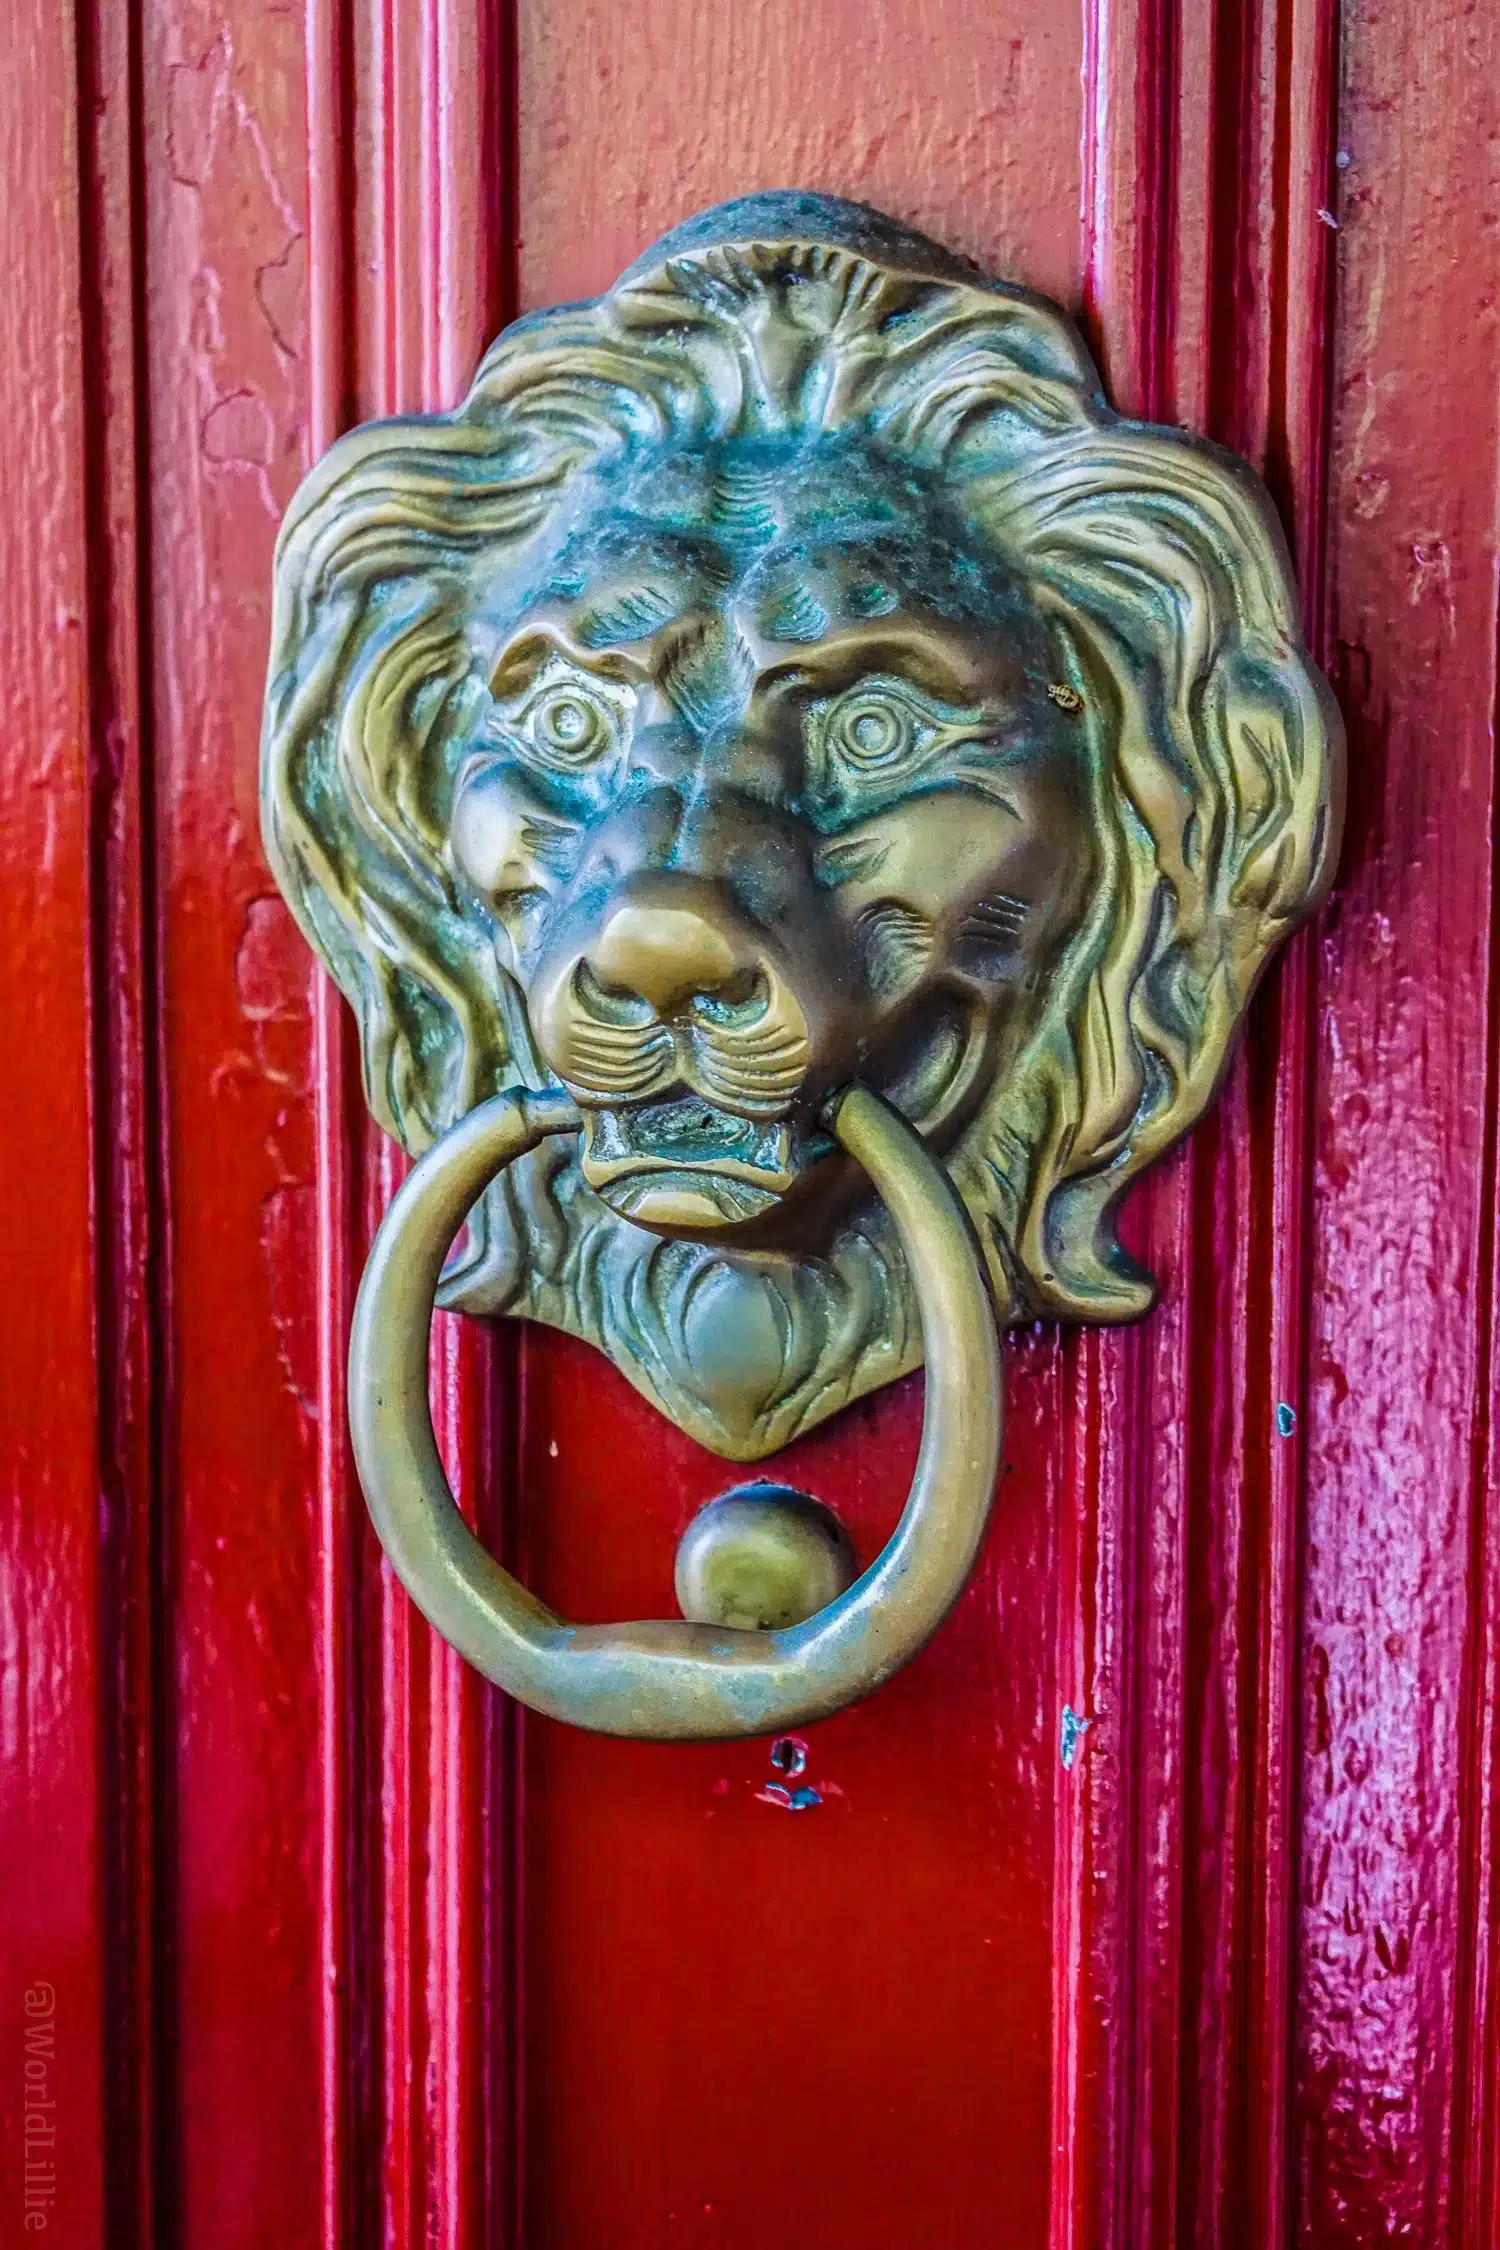 The lion door knocker at the Red Lion Inn, Stockbridge, MA.